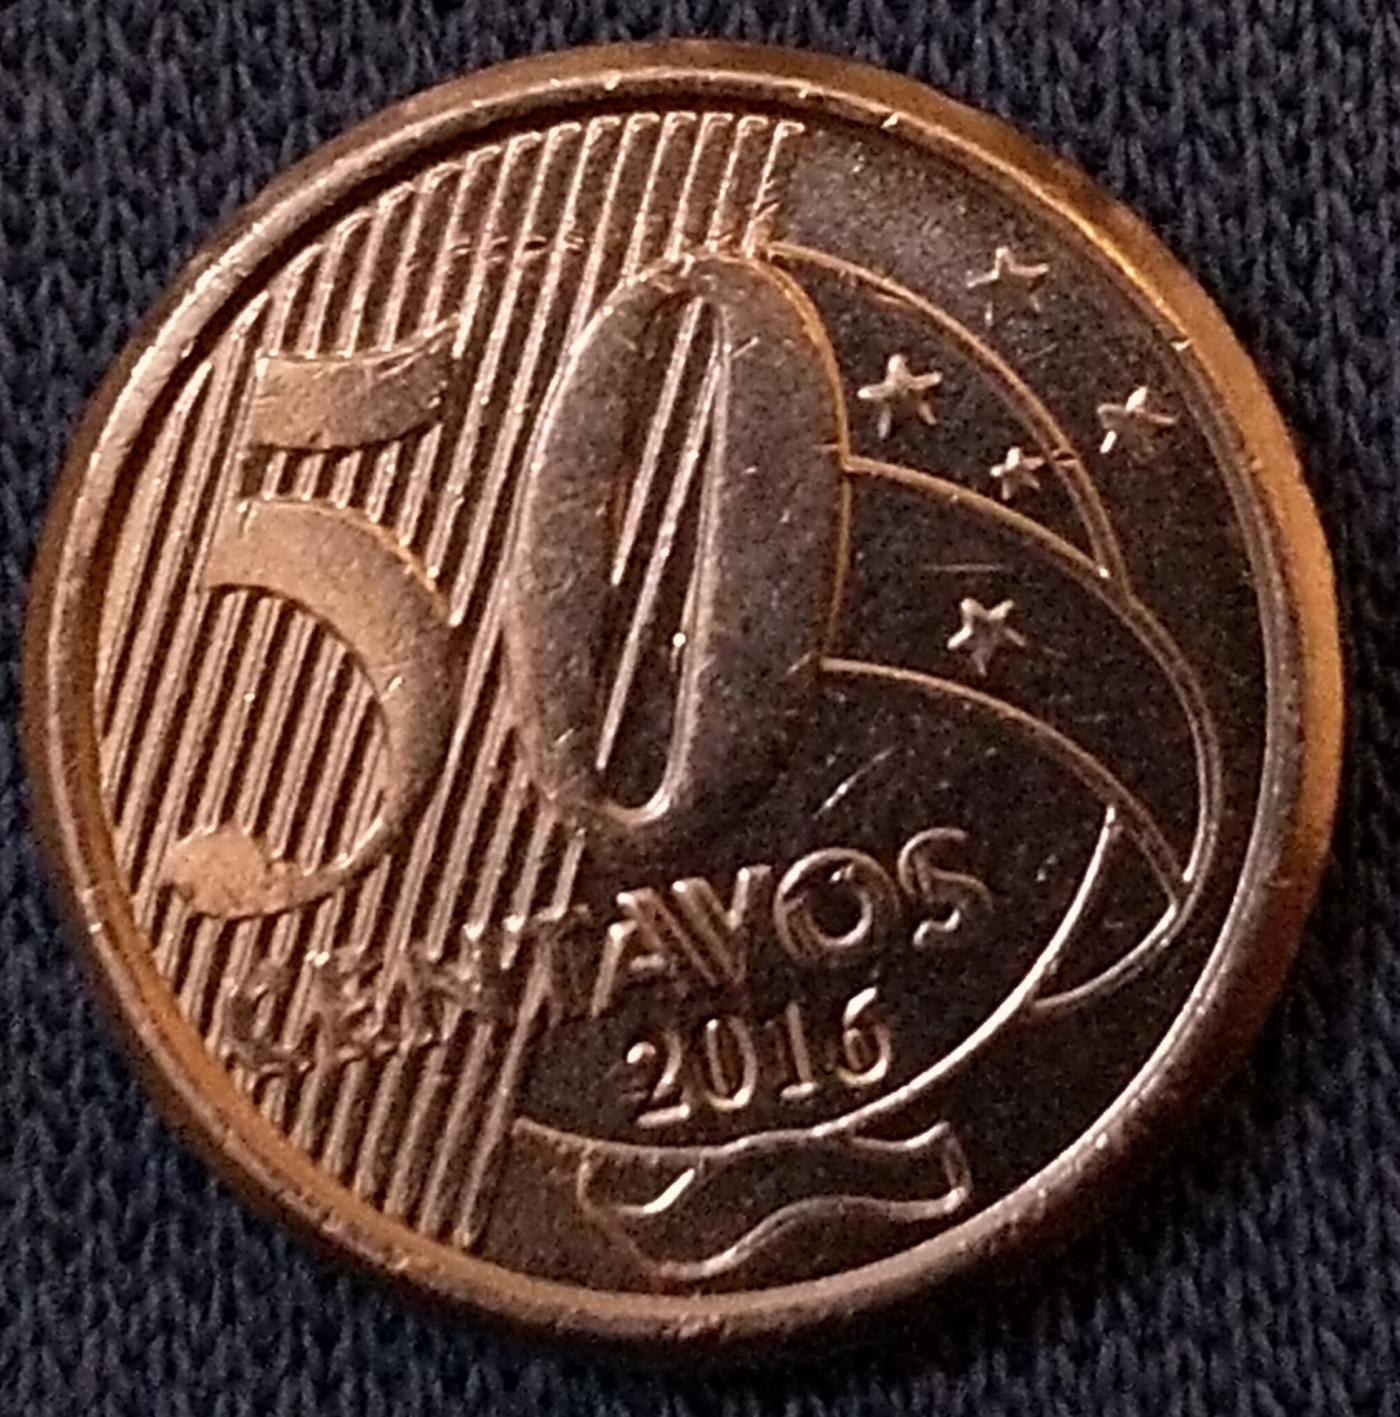 50 centavos 2016, Republic (2011-2020) - Brazil - Coin - 43322